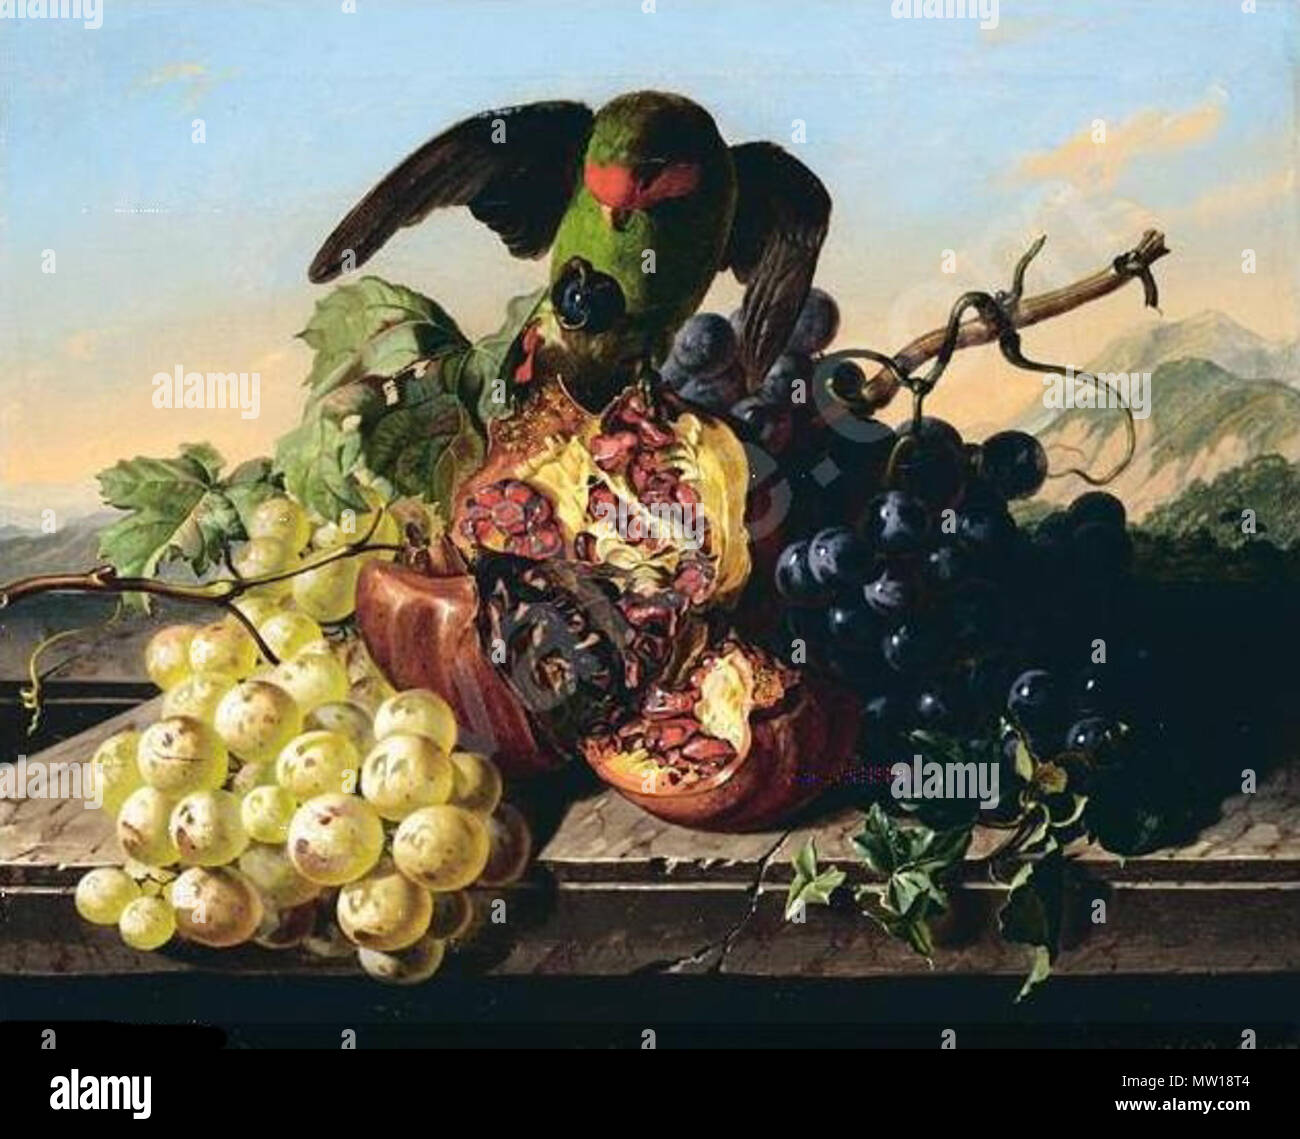 . Deutsch: Agapornid stielt Fressen. . Strohmayer 1828-1868 578 Strohmayer-antal-jozsef - parrot-stealing-fruit Stock Photo